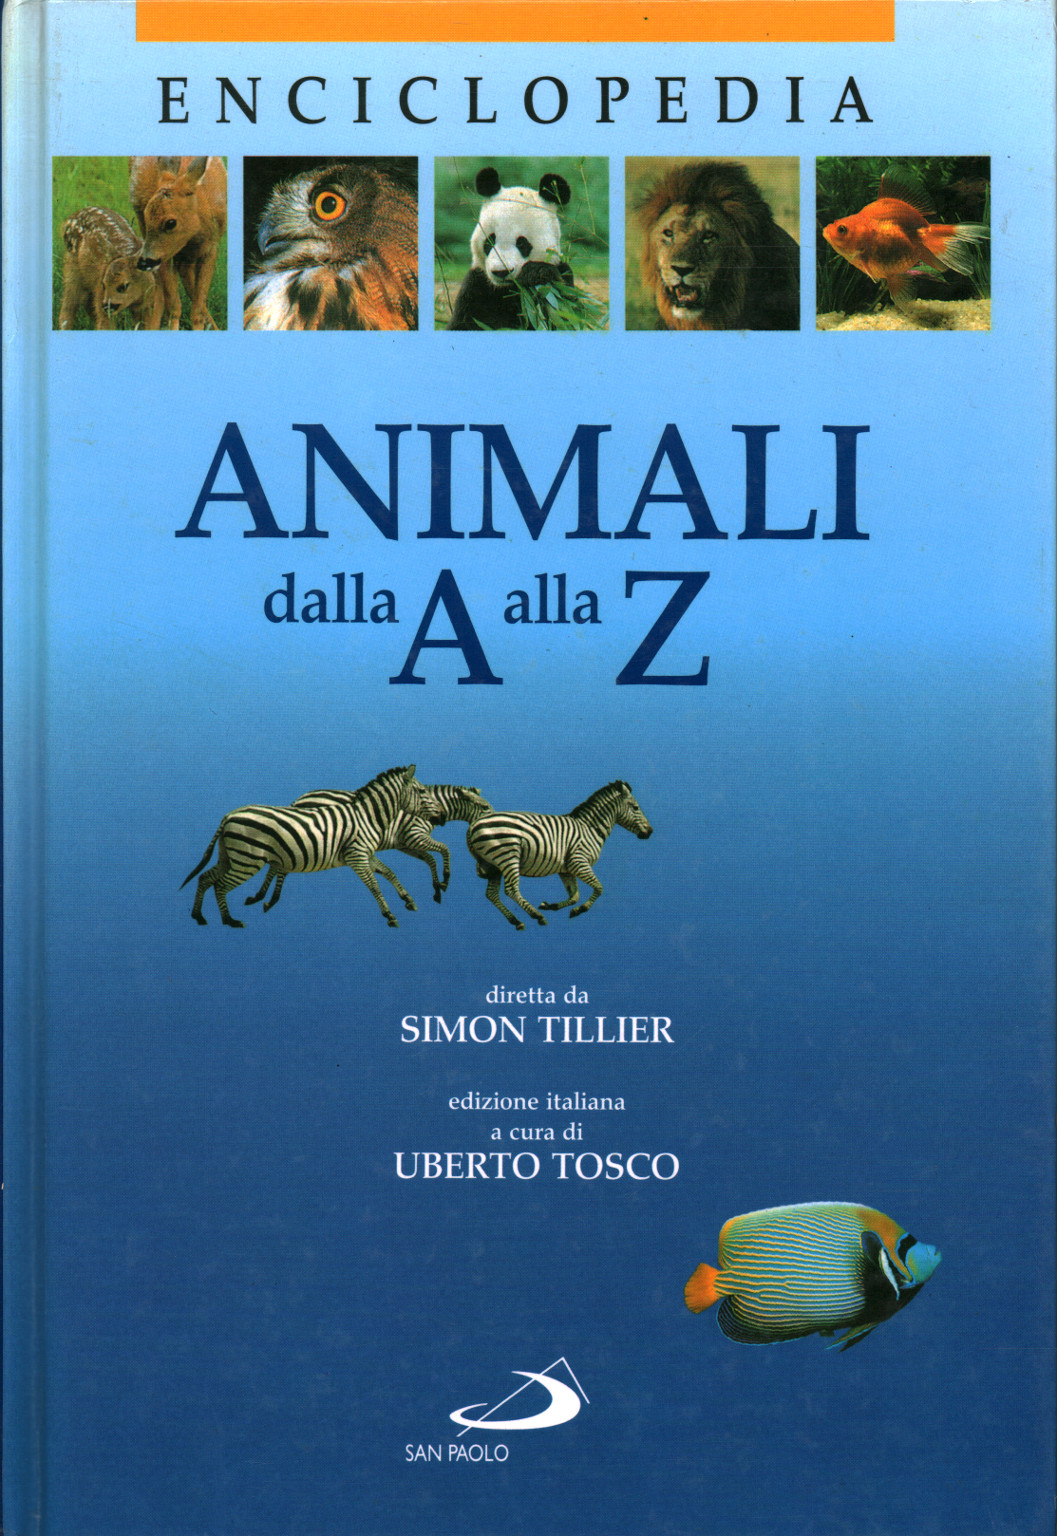 Animali dalla A alla Z, s.a.